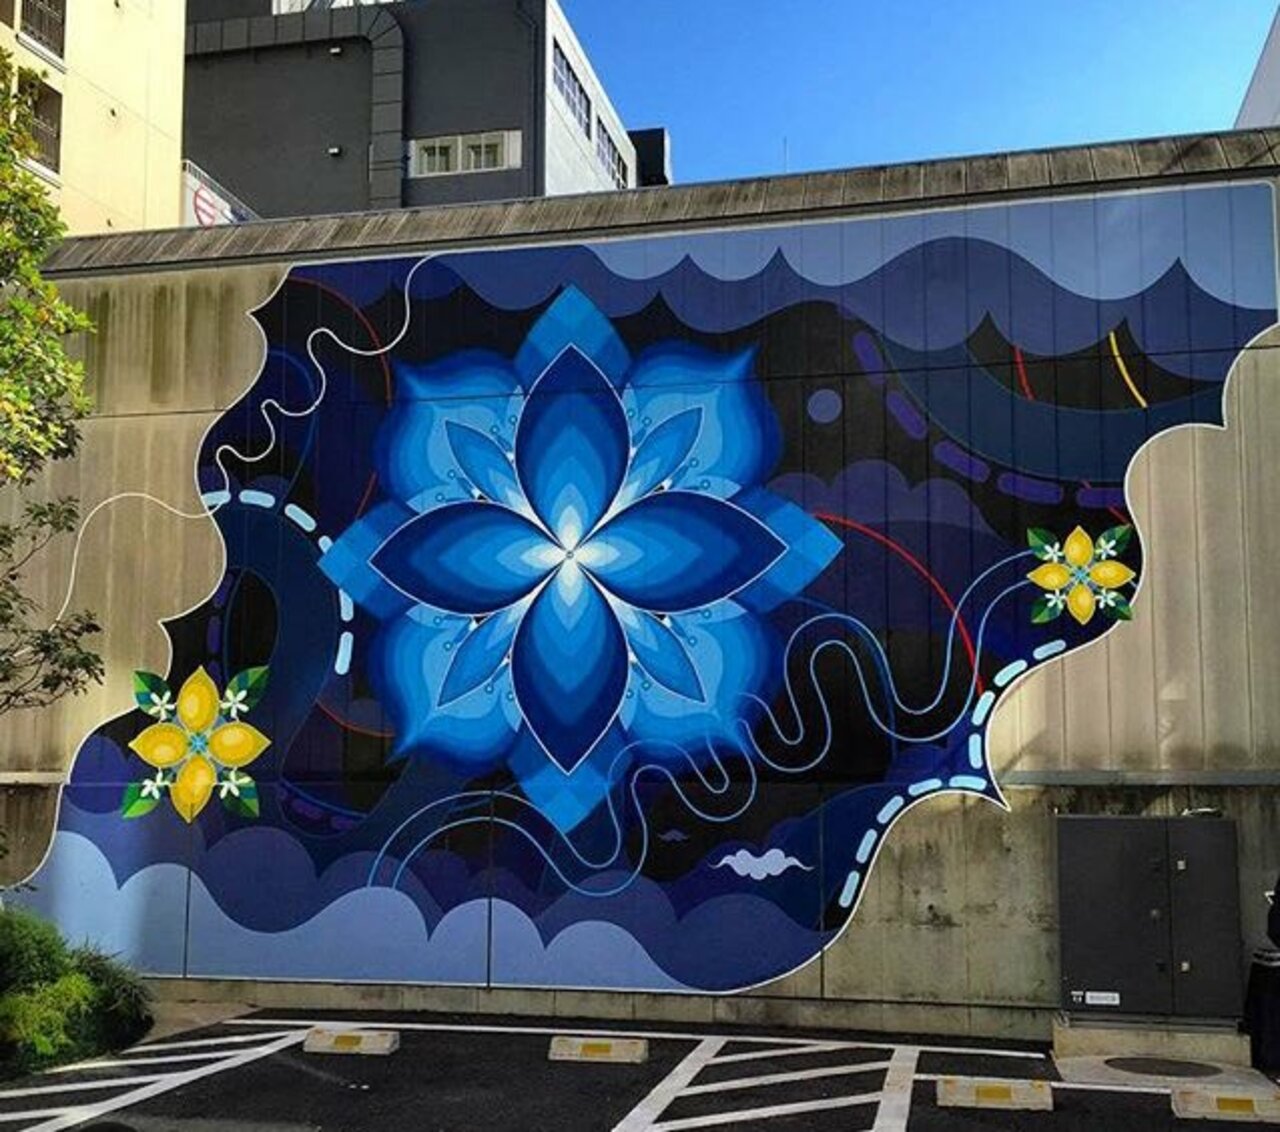 New Street Art by htzk, kami_htzk + sasu_lyri 

#art #graffiti #mural #streetart https://t.co/AU4TNQFNzd googlestreetart chinatoniq